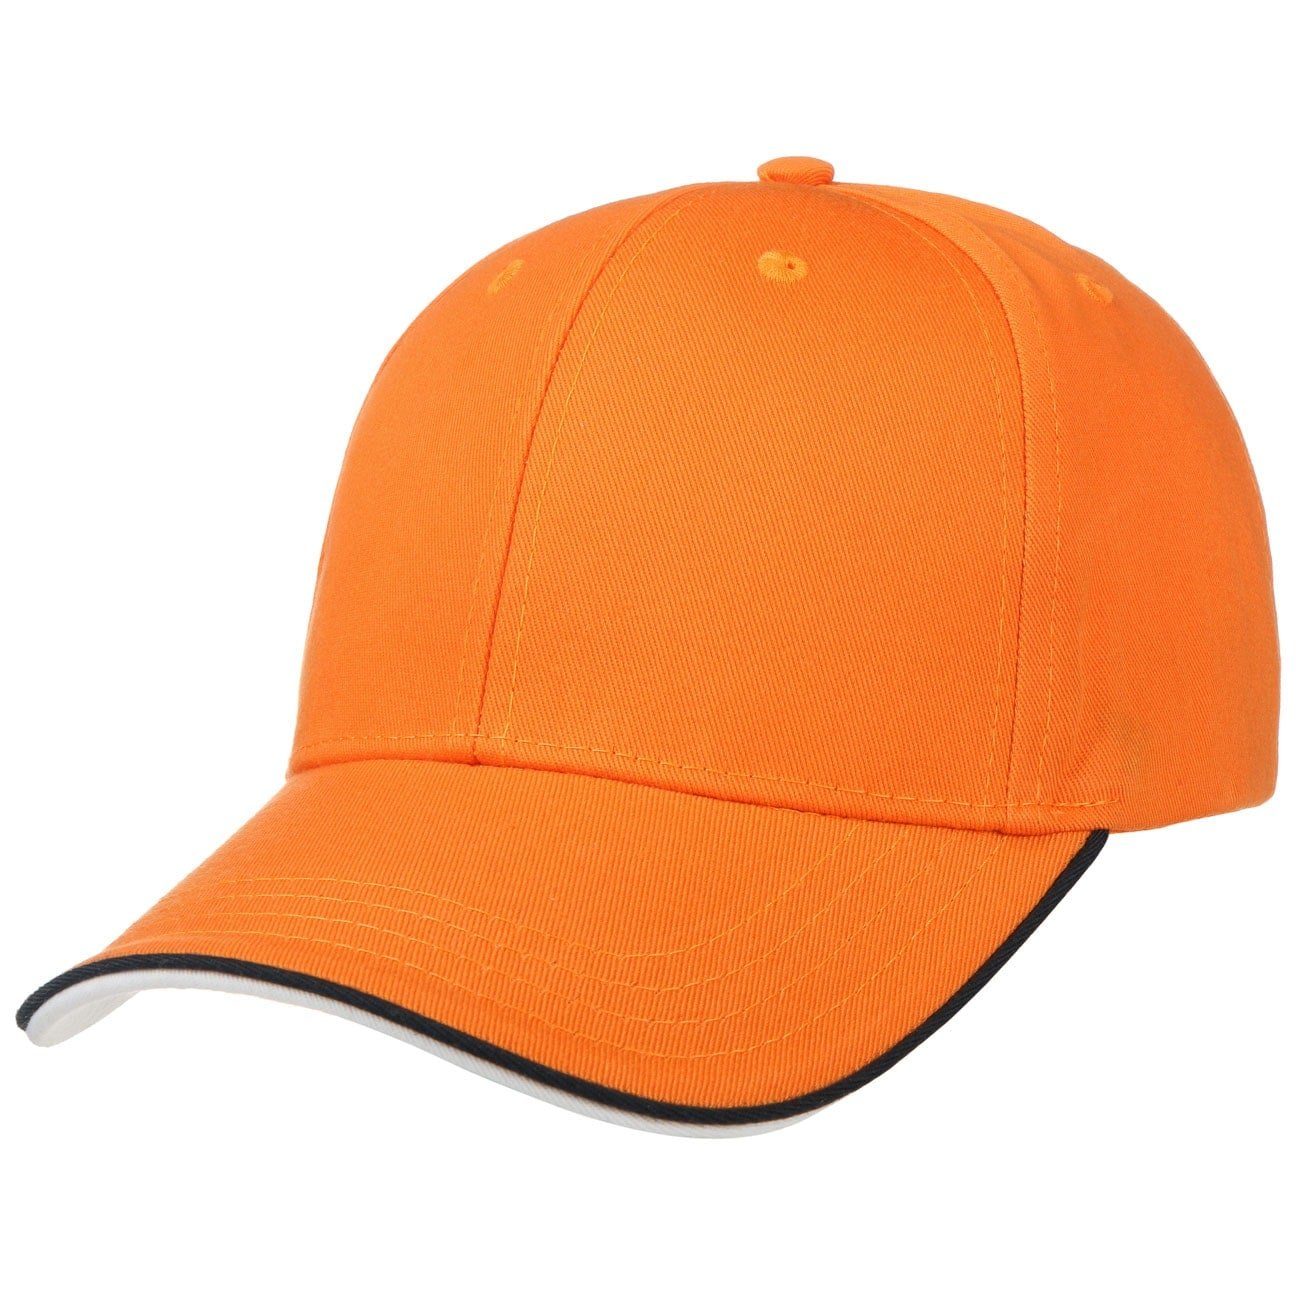 Orangenene Caps online kaufen » Kappe | OTTO